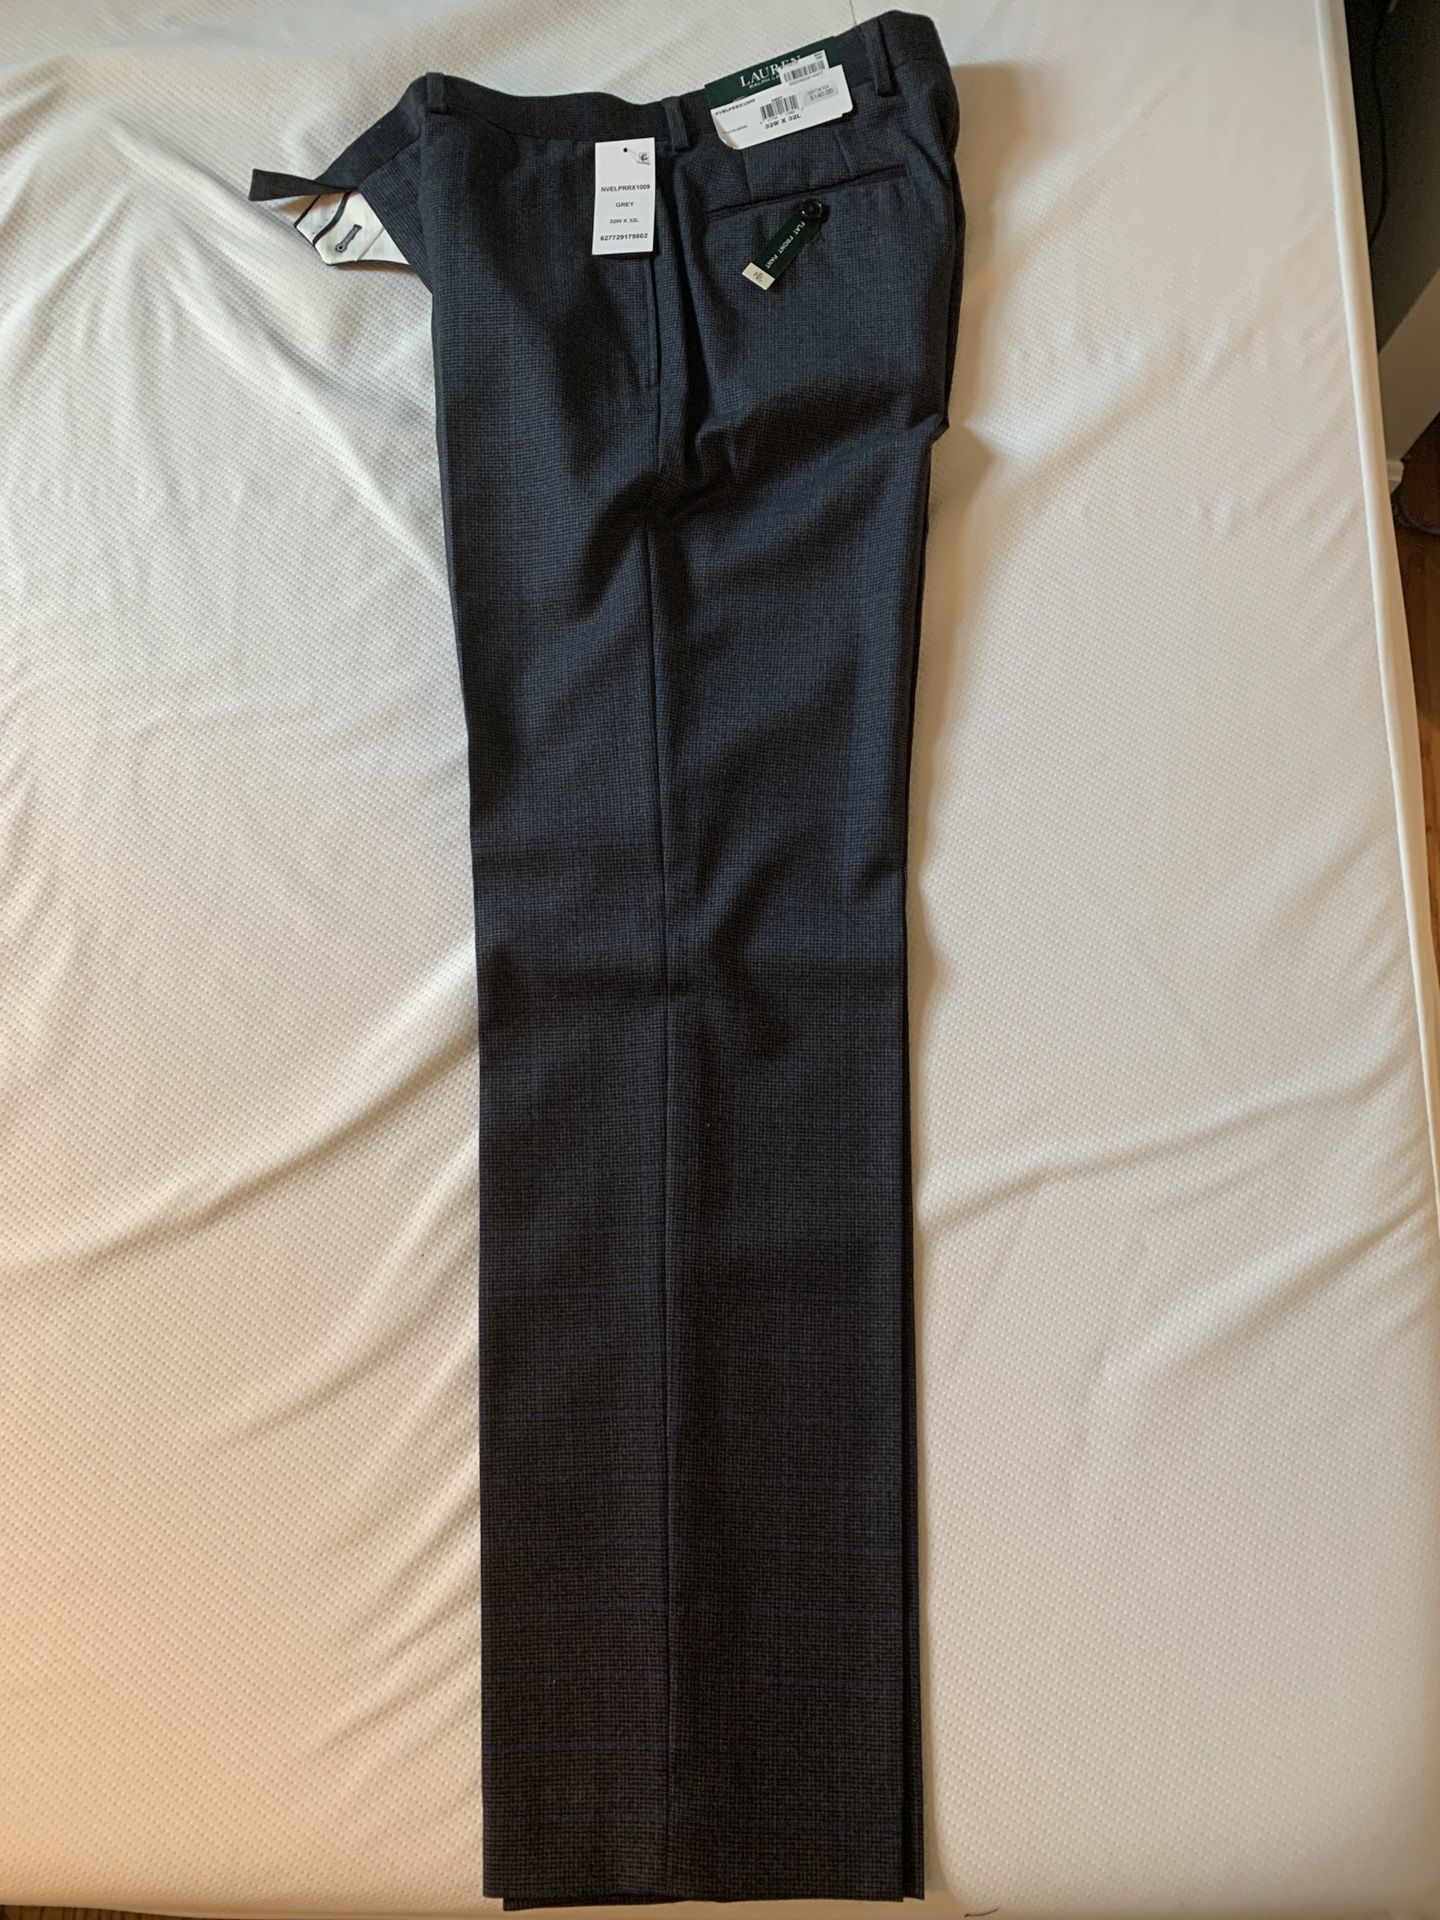 New Lauren Ralph Lauren 100% Wool Dress Pants 32W x 32L